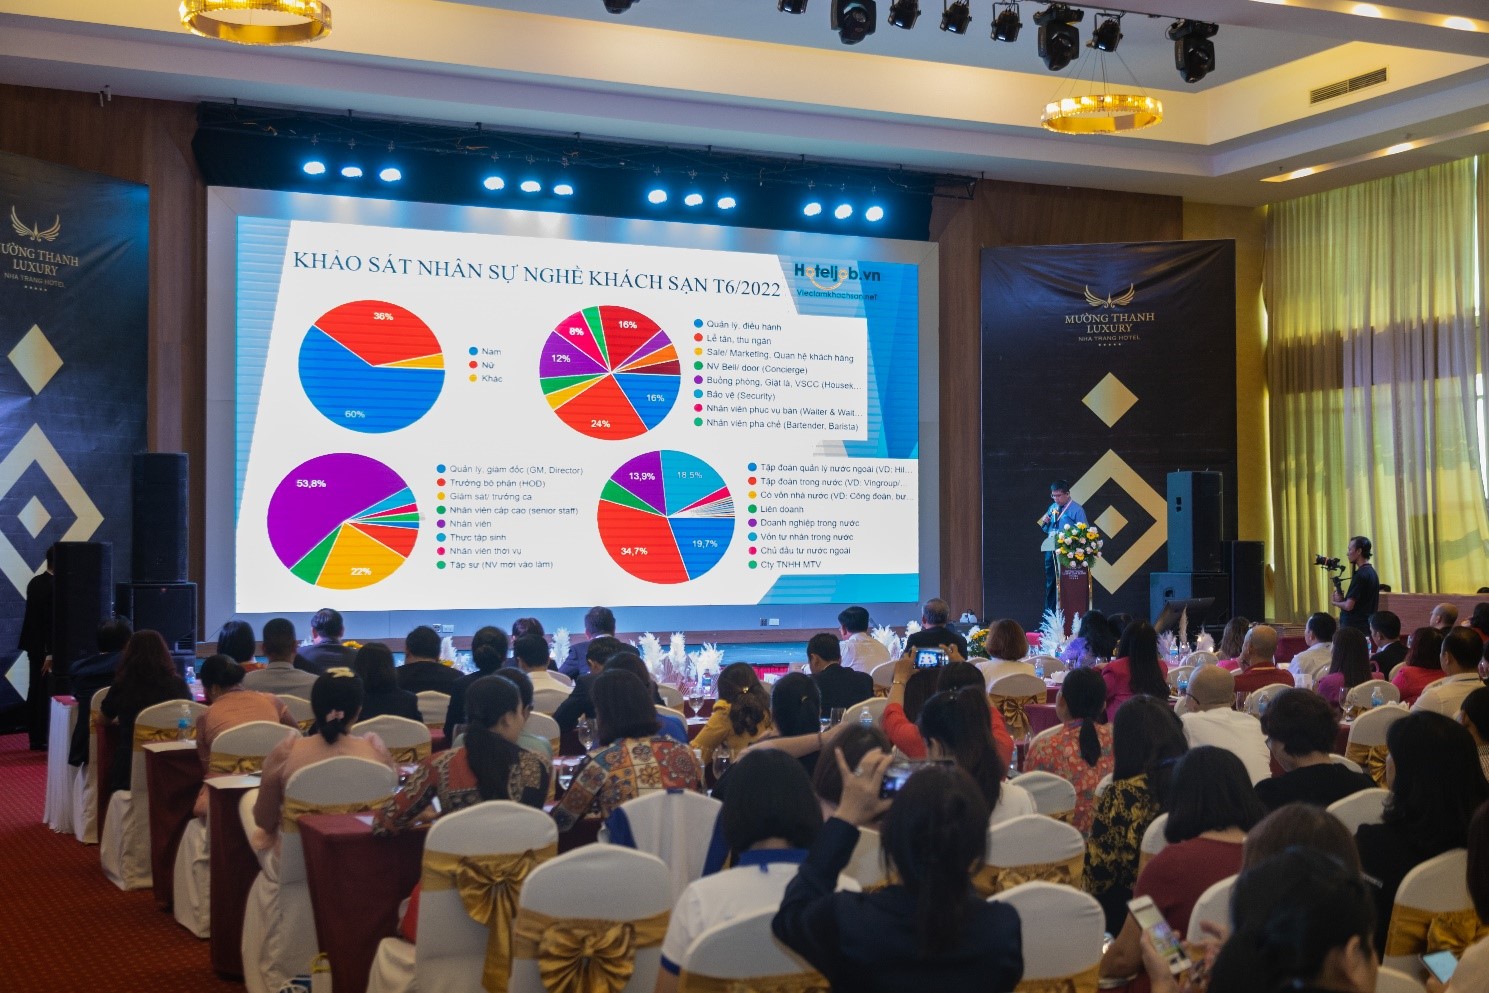 Ông Lê Quốc Việt- CEO – Hotel Job chia sẻ về khảo sát thực trạng Nghề khách sạn ở Việt Nam